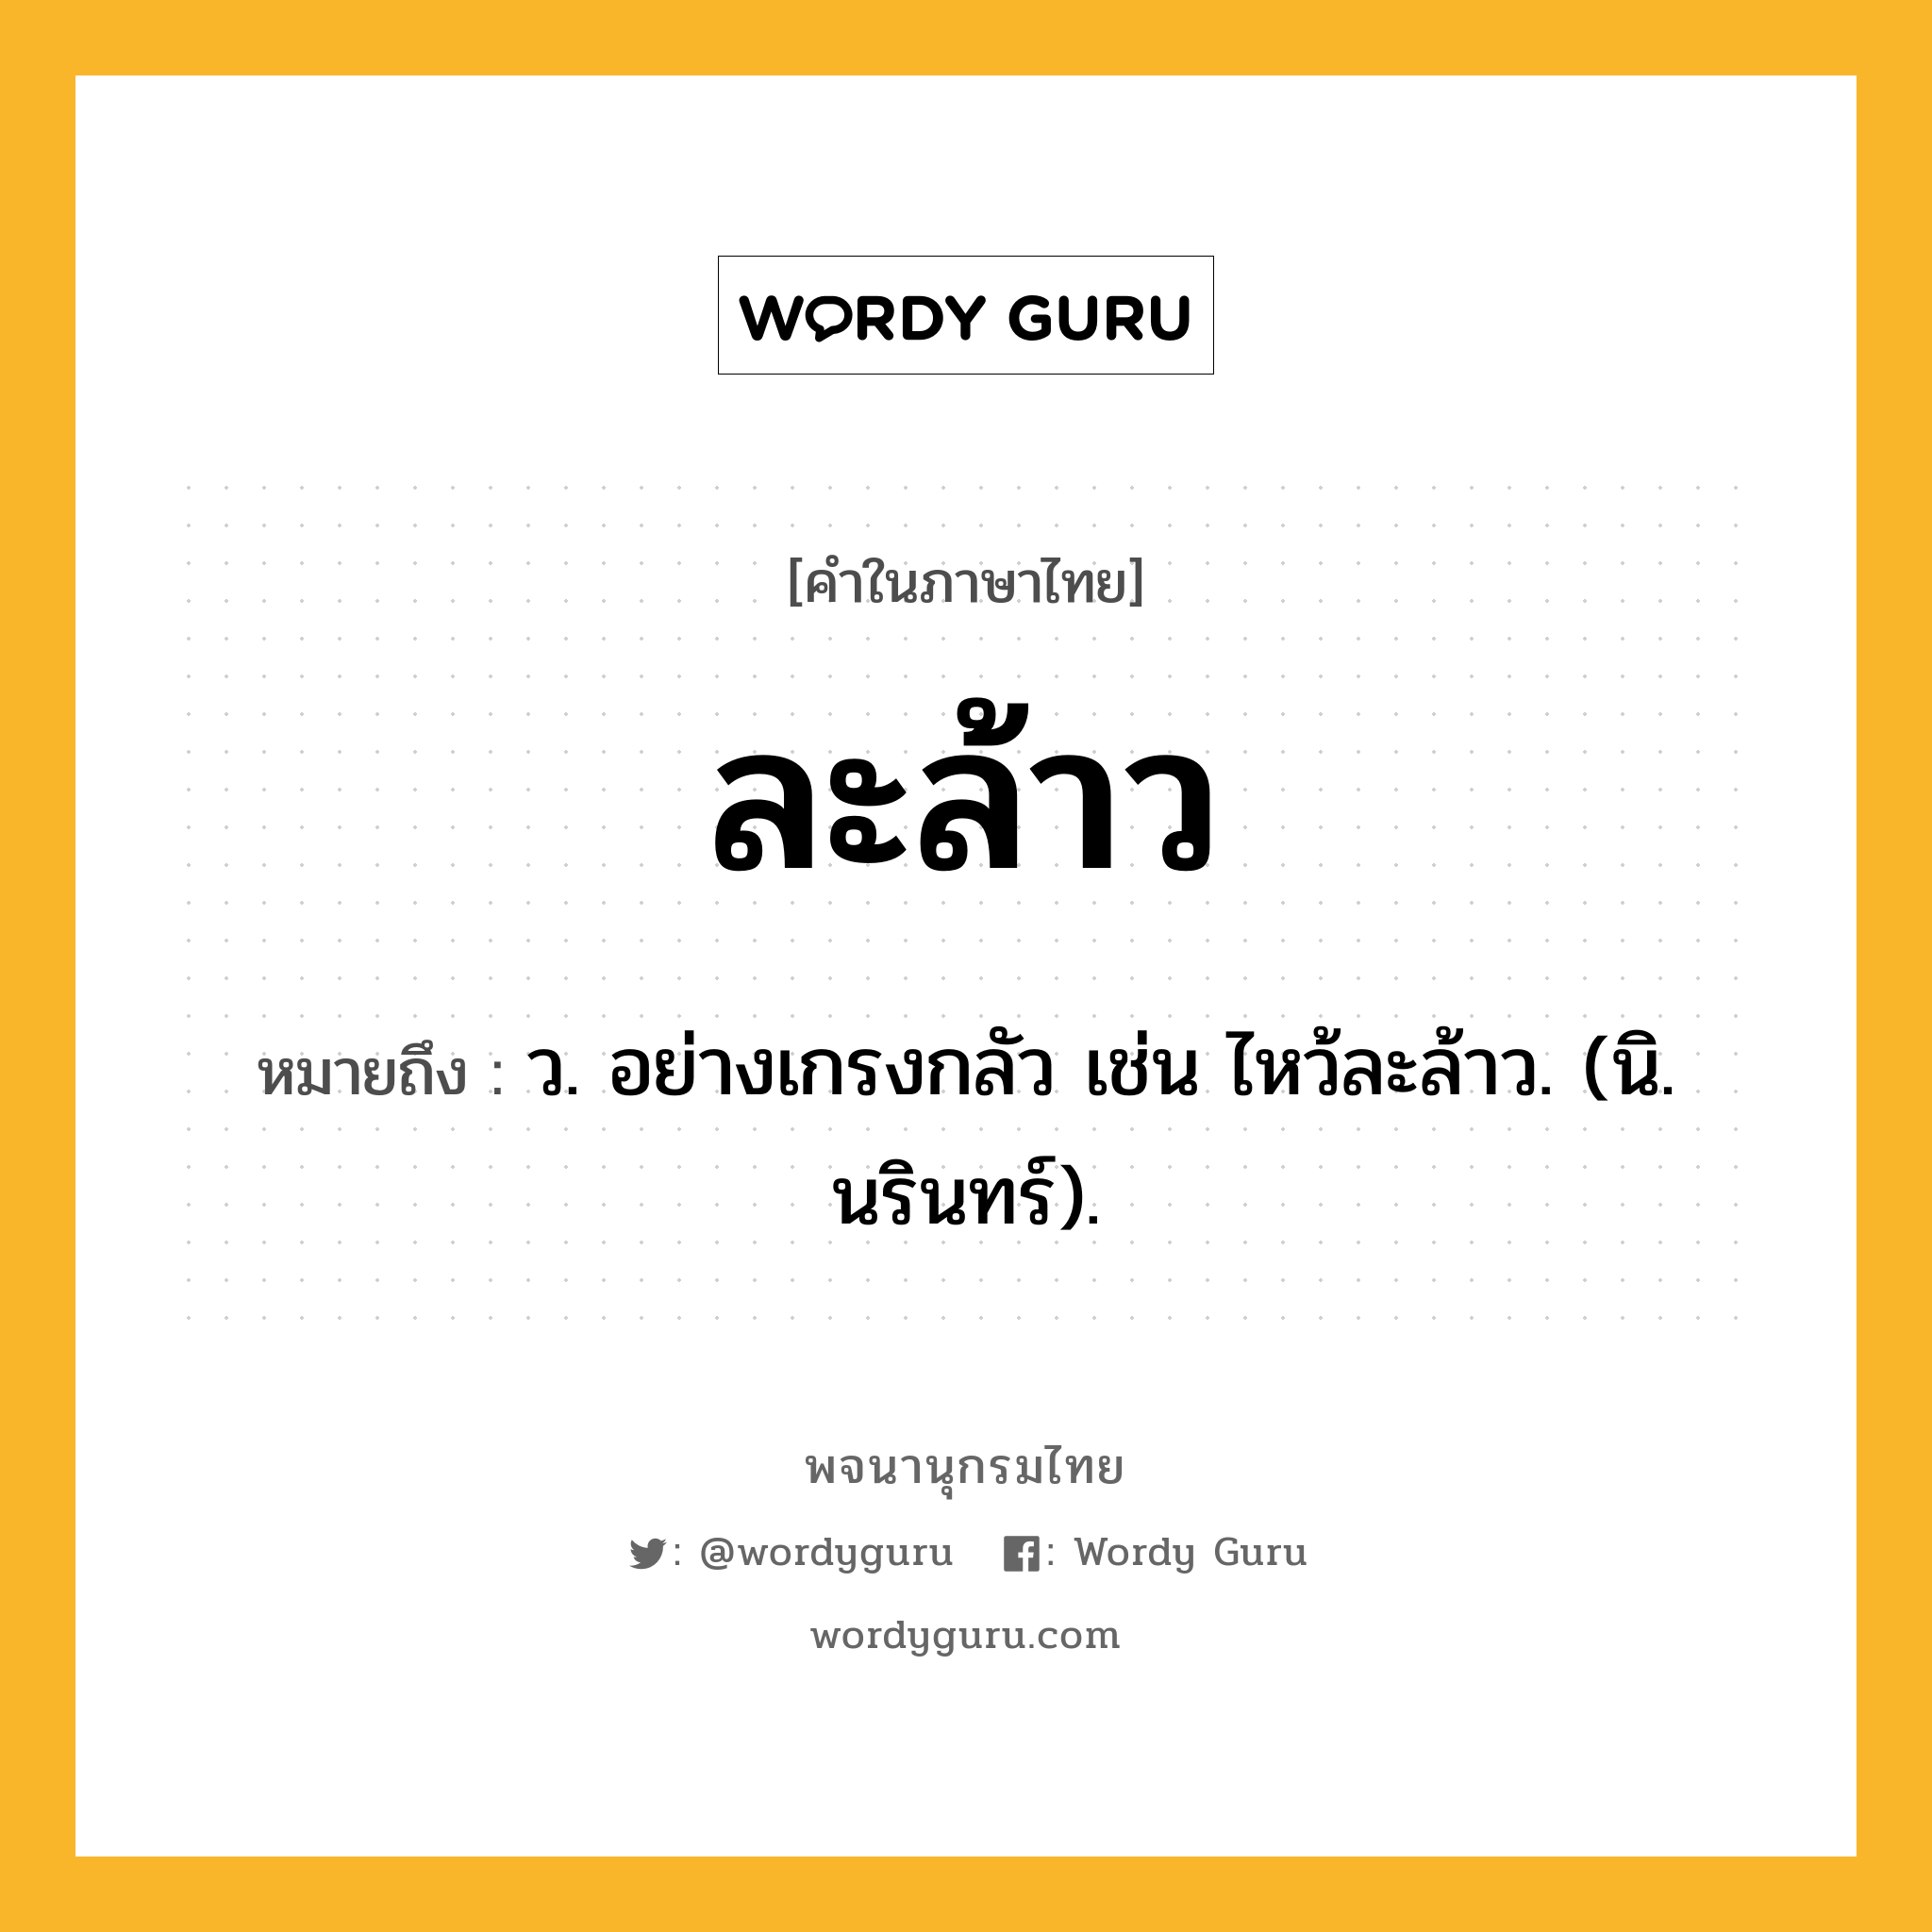 ละล้าว ความหมาย หมายถึงอะไร?, คำในภาษาไทย ละล้าว หมายถึง ว. อย่างเกรงกลัว เช่น ไหว้ละล้าว. (นิ. นรินทร์).